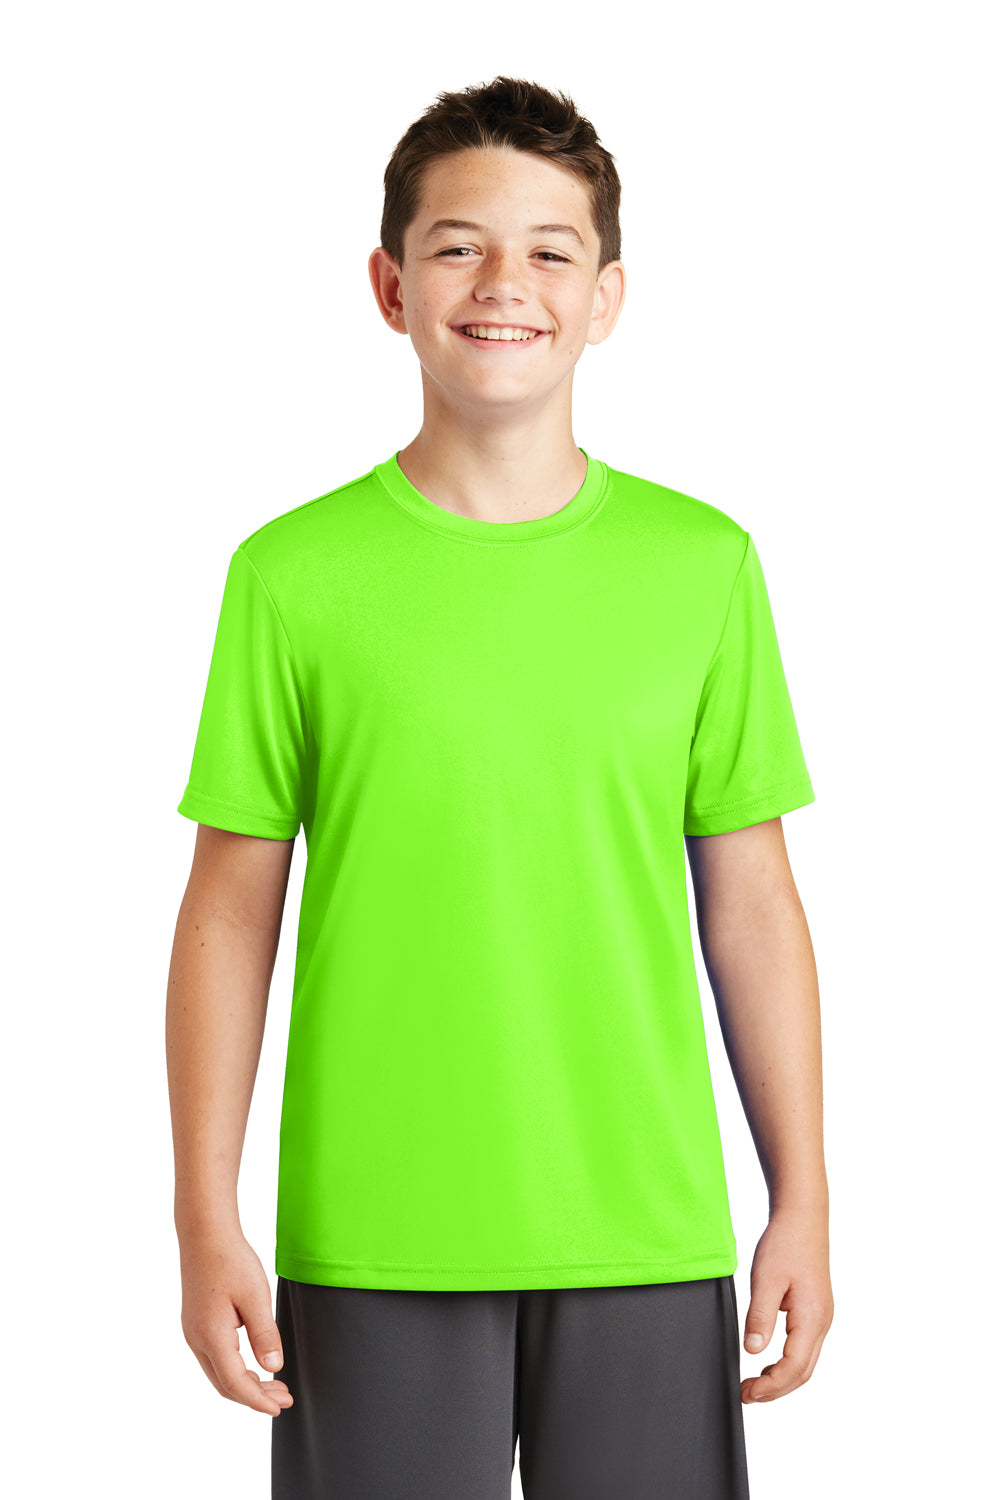 Sport-Tek YST320 Youth Tough Moisture Wicking Short Sleeve Crewneck T-Shirt Neon Green Front